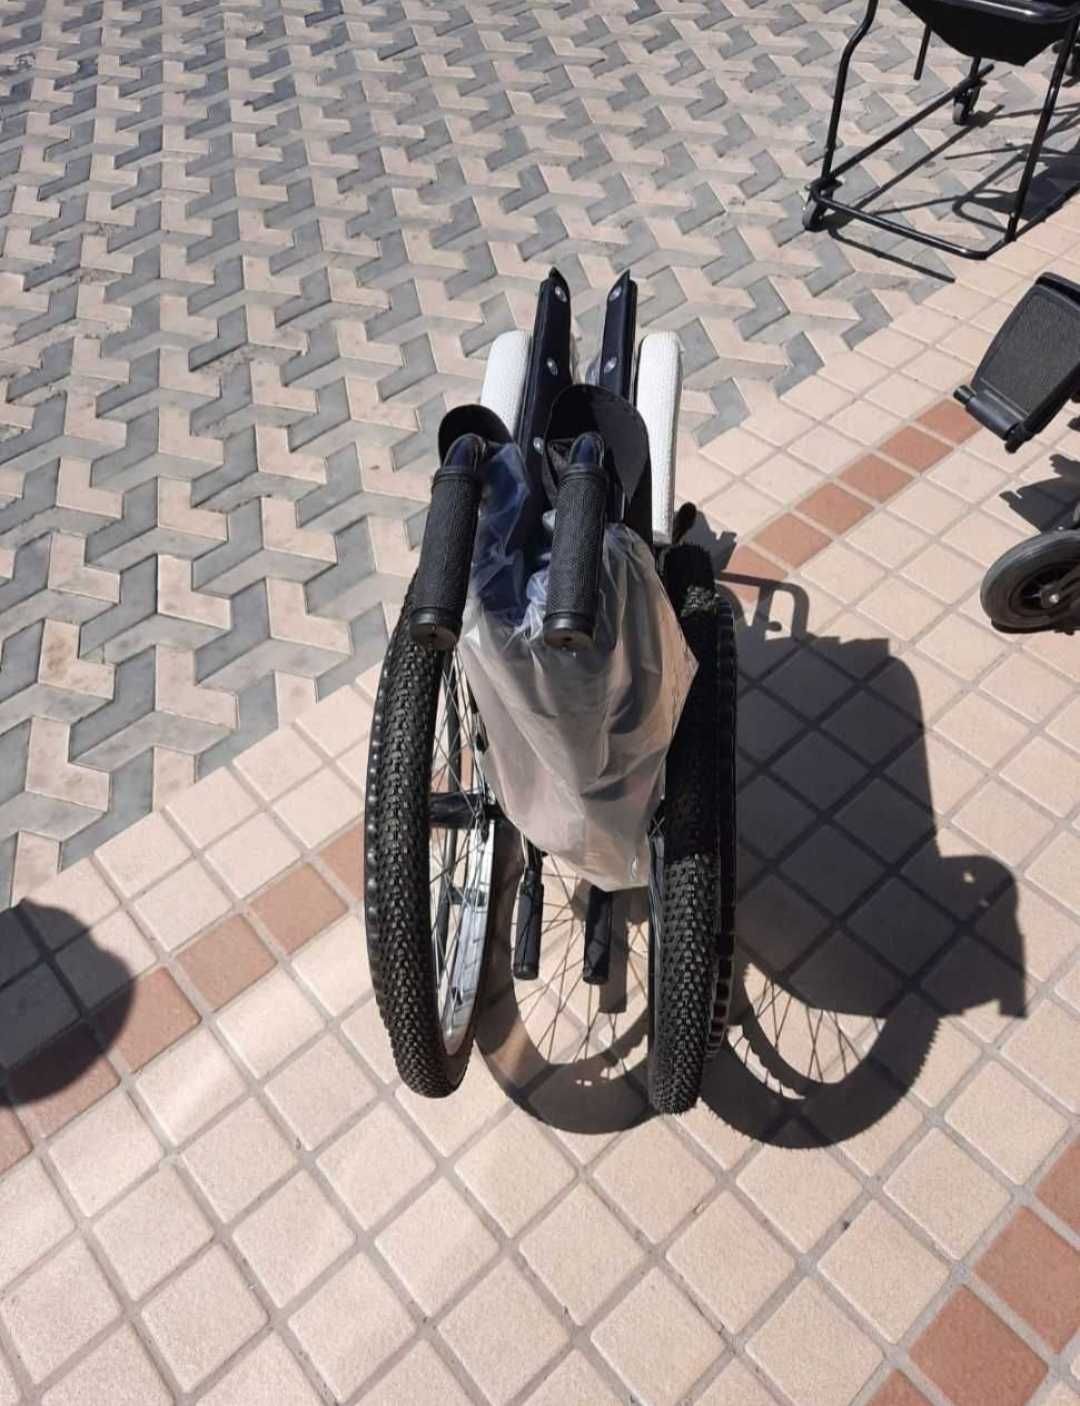 Инвалидная коляска Ногиронлар аравачаси араваси  m105